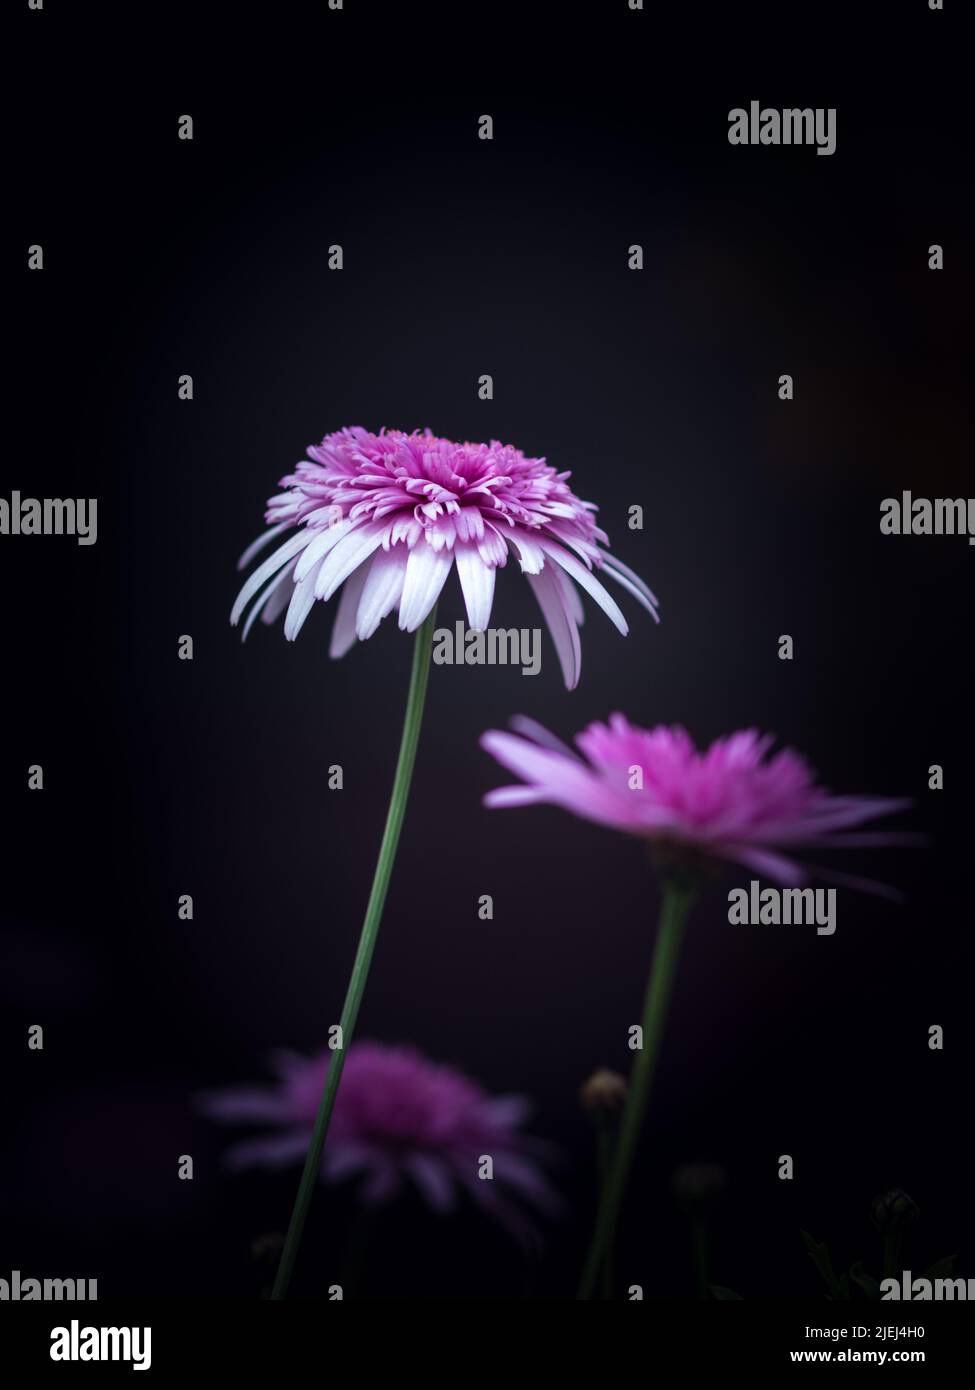 Vivaci fiori rosa cinese dell'astro su sfondo nero con fuoco selettivo. Fotografia di fiori in toni modici con spazio vuoto per il testo Foto Stock